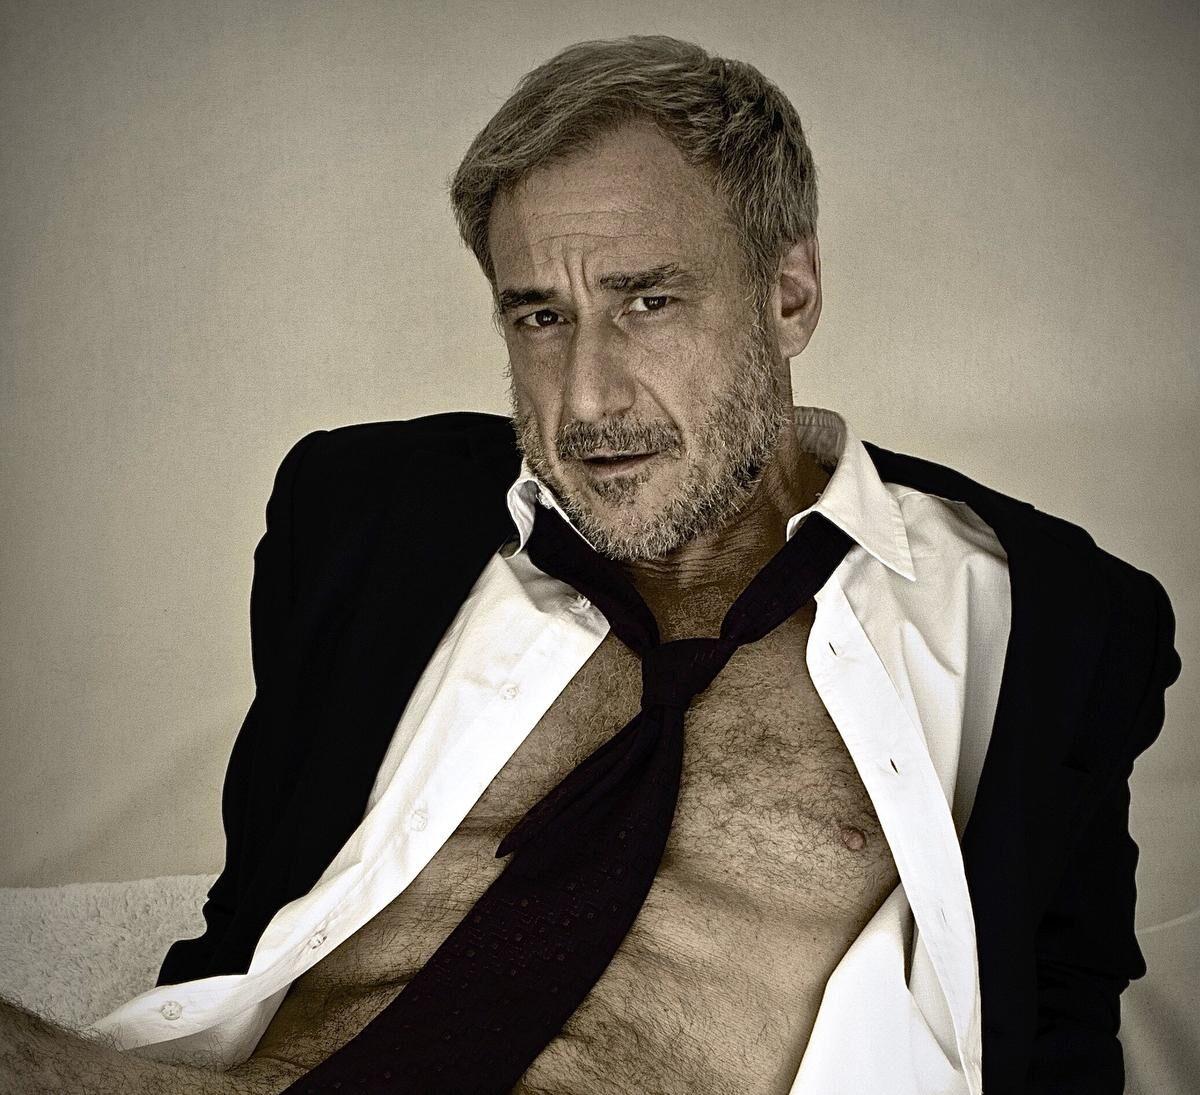 David Pevsner is blazing a trail for senior citizen erotica 